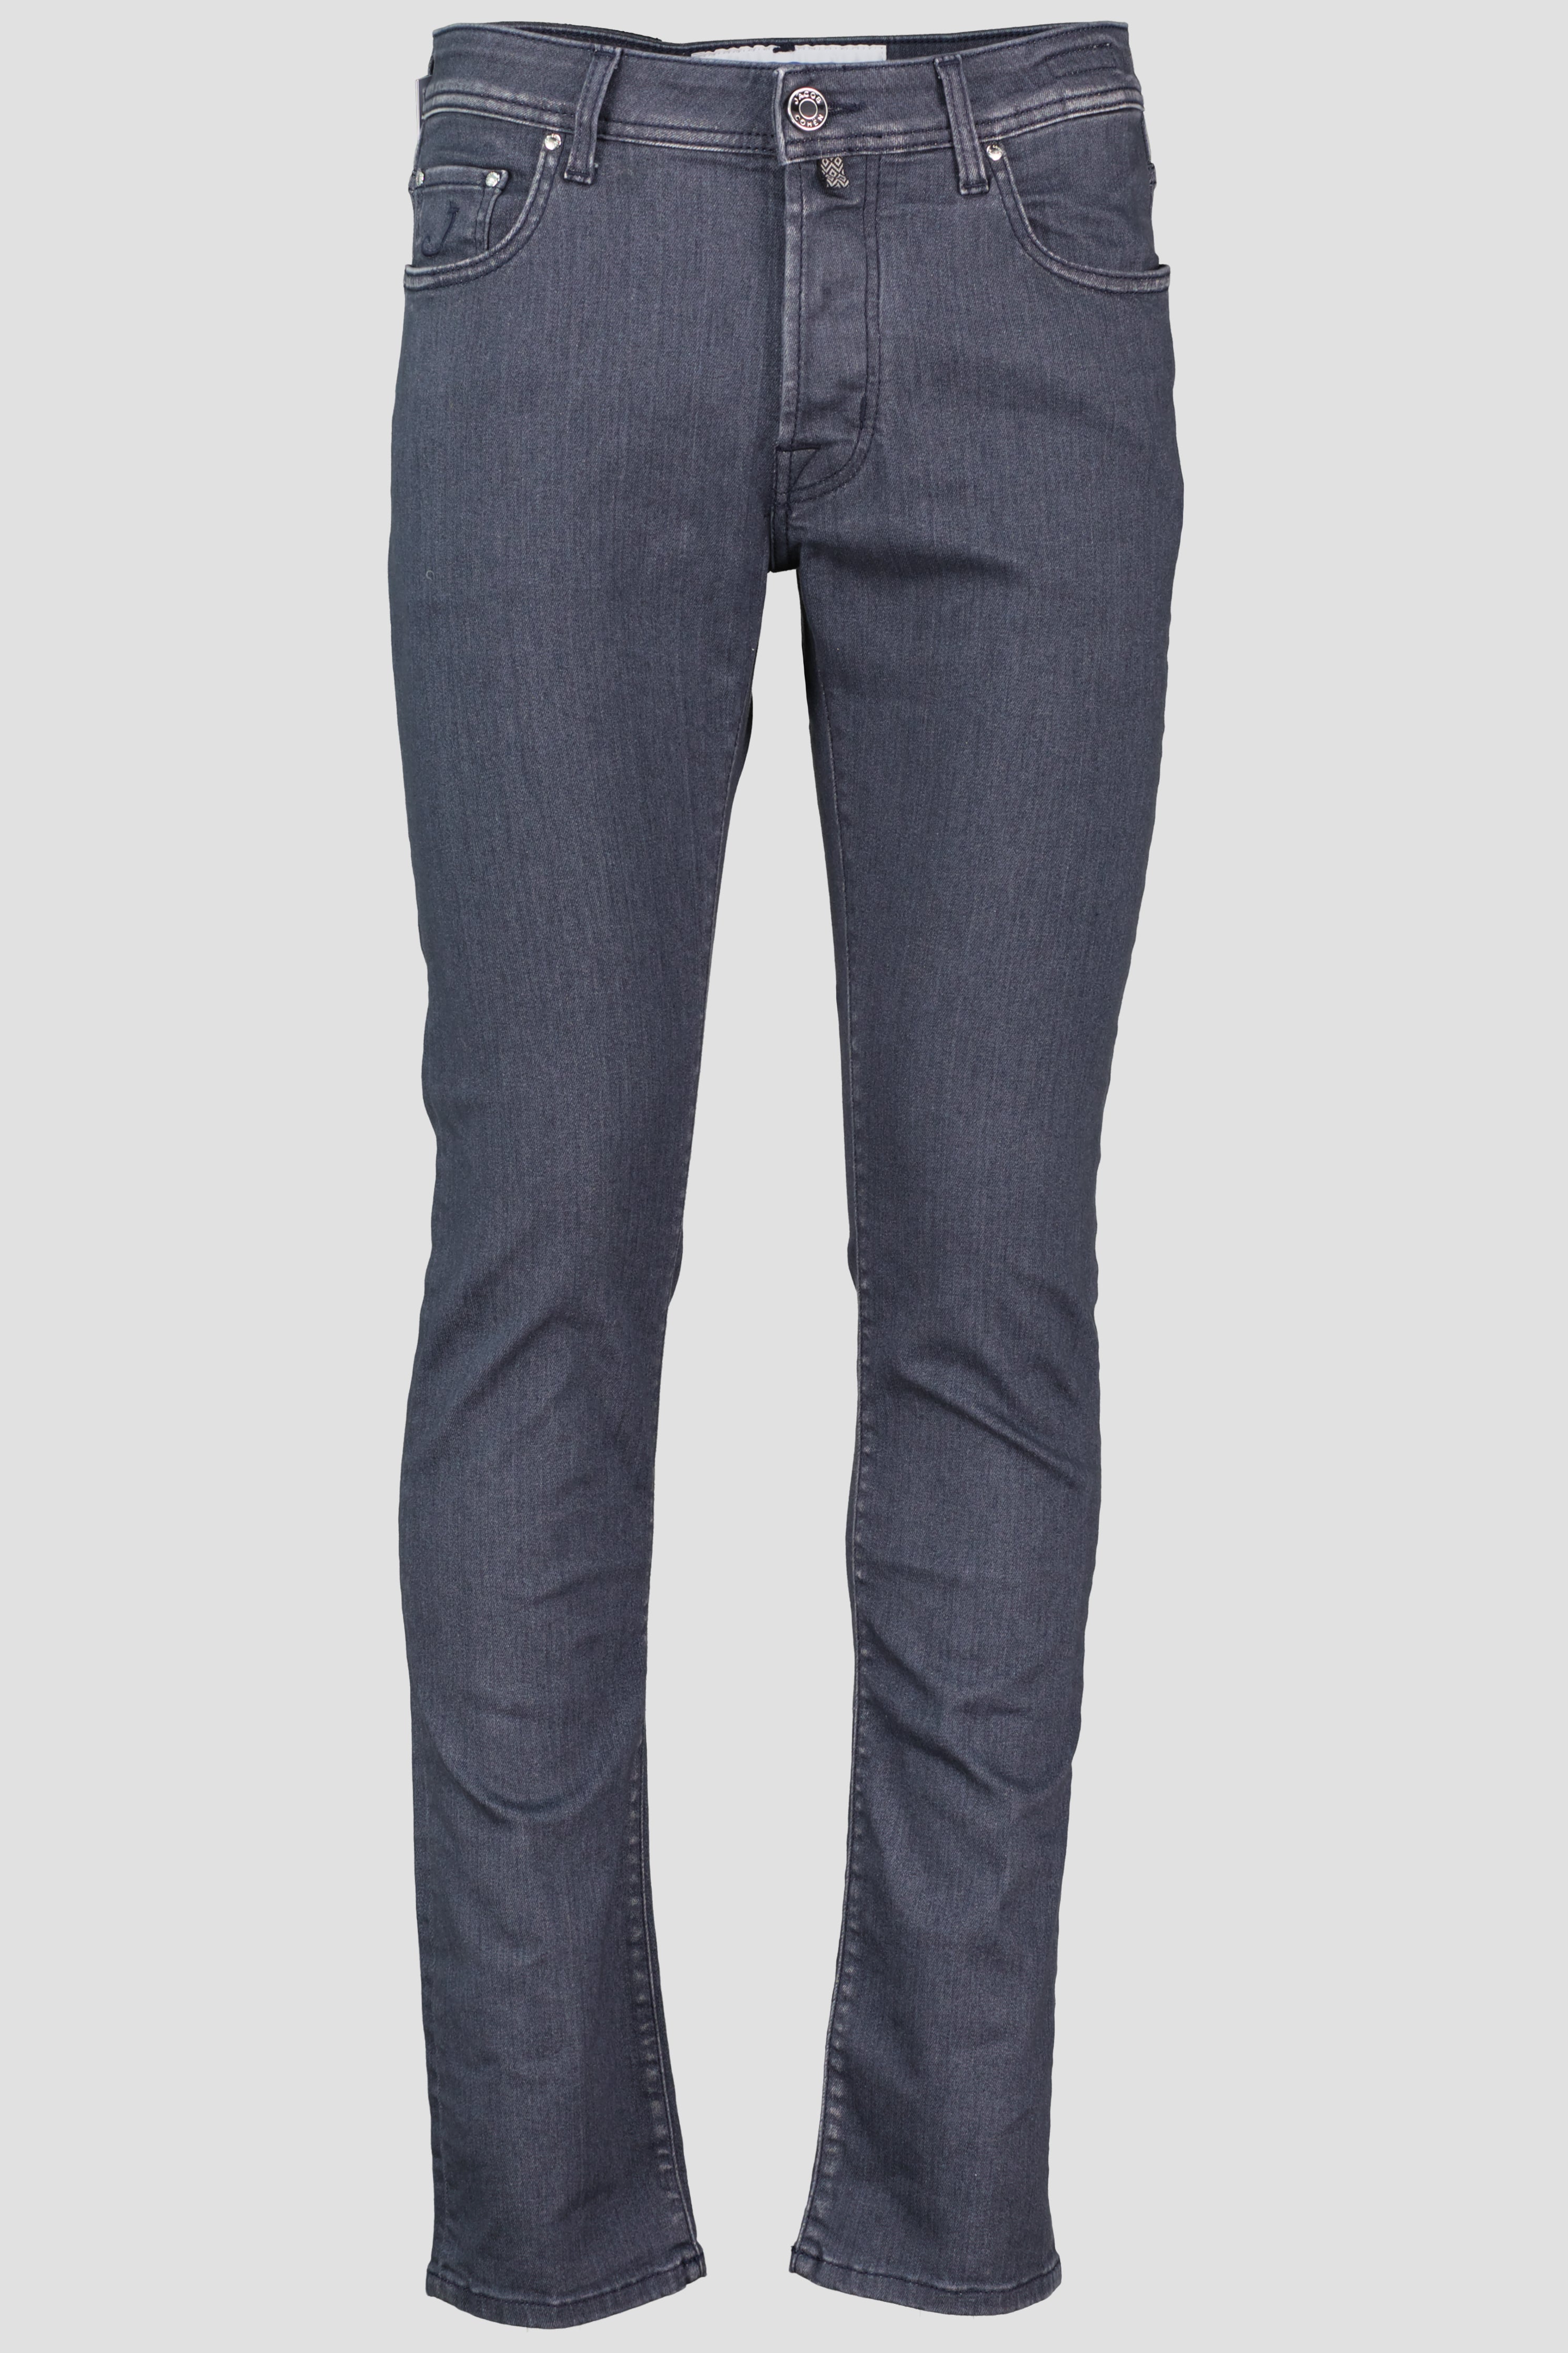 Men's Jacob Cohen Charcoal Bard Slim Fit Jeans